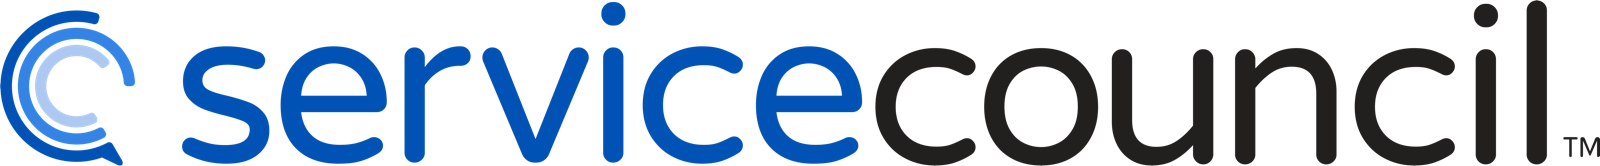 Service Council Logo